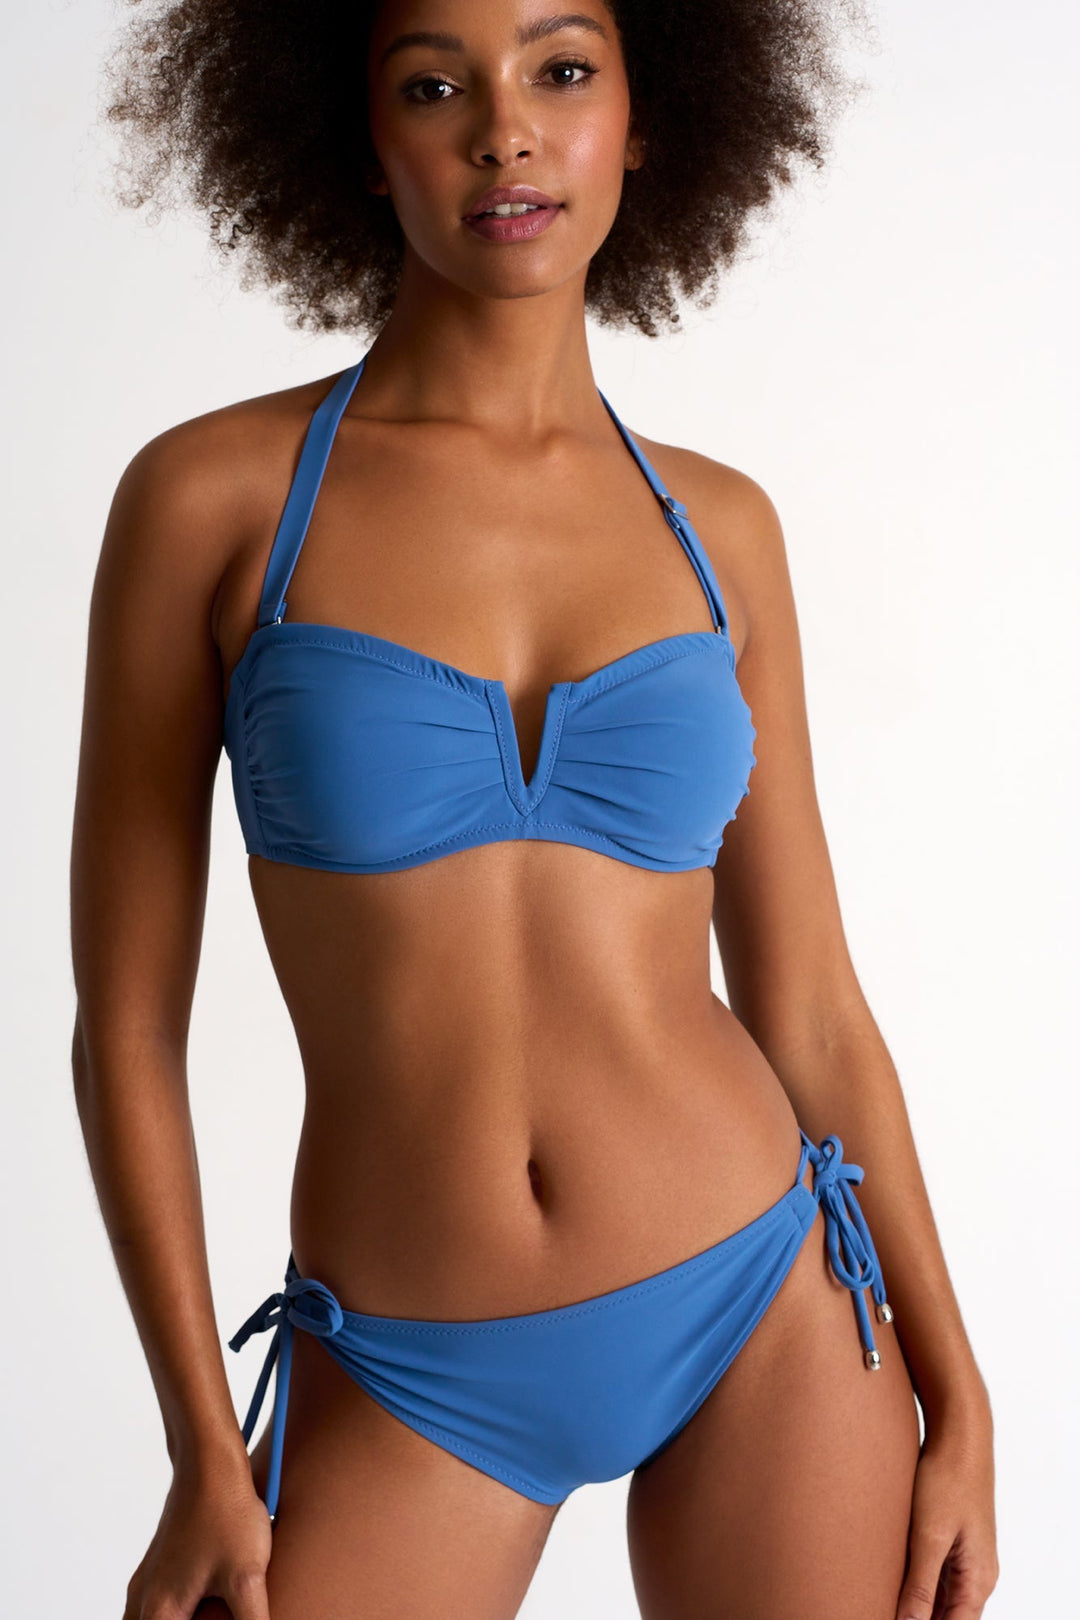 Bikini Bottom - 42460-31-510 4 / 510 French Blue / 75% POLYAMIDE, 25% ELASTANE